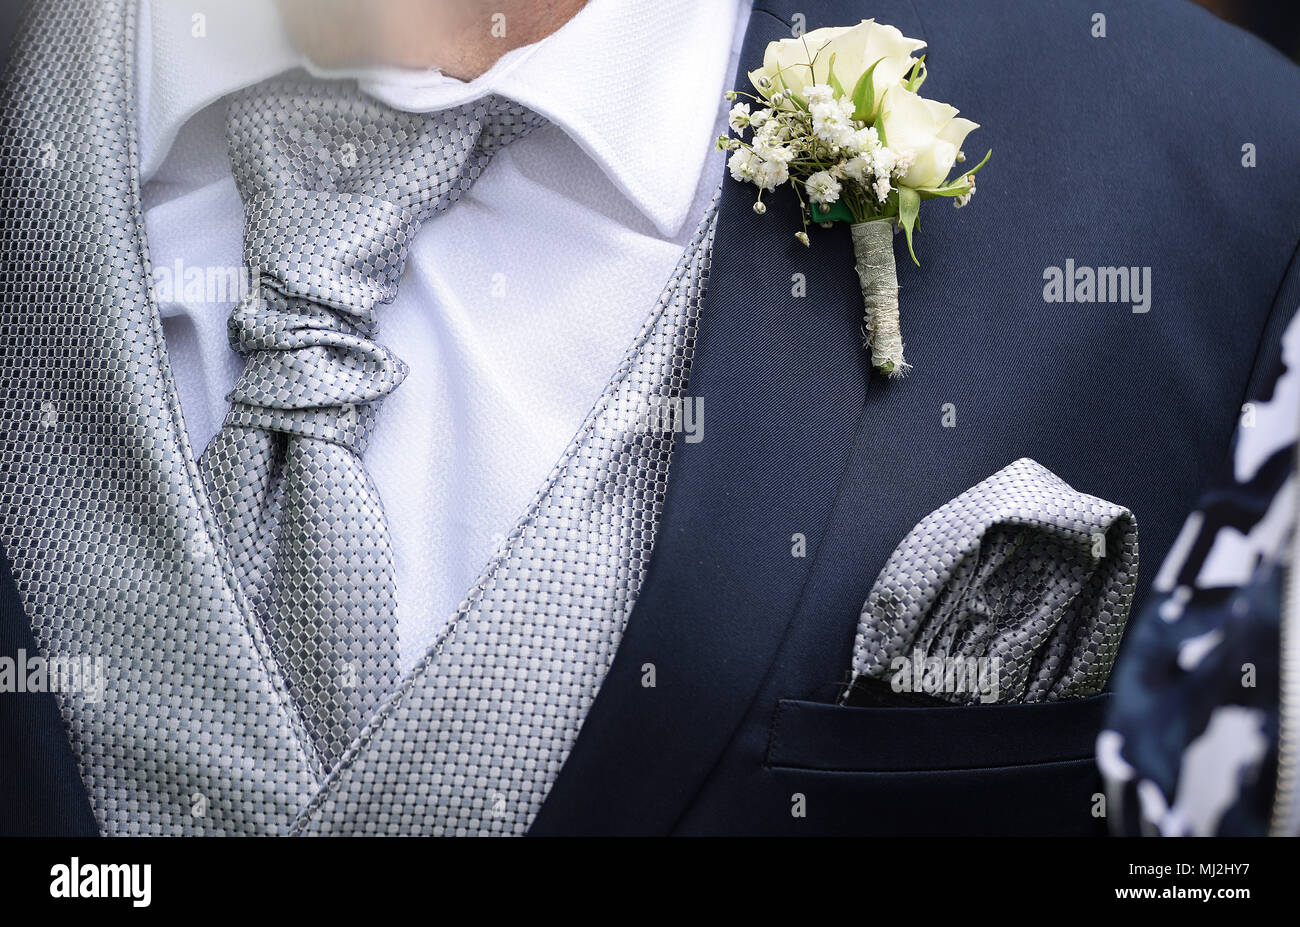 Homme portant un élégant costume avec cravate en soie, foulard et détail  Photo Stock - Alamy